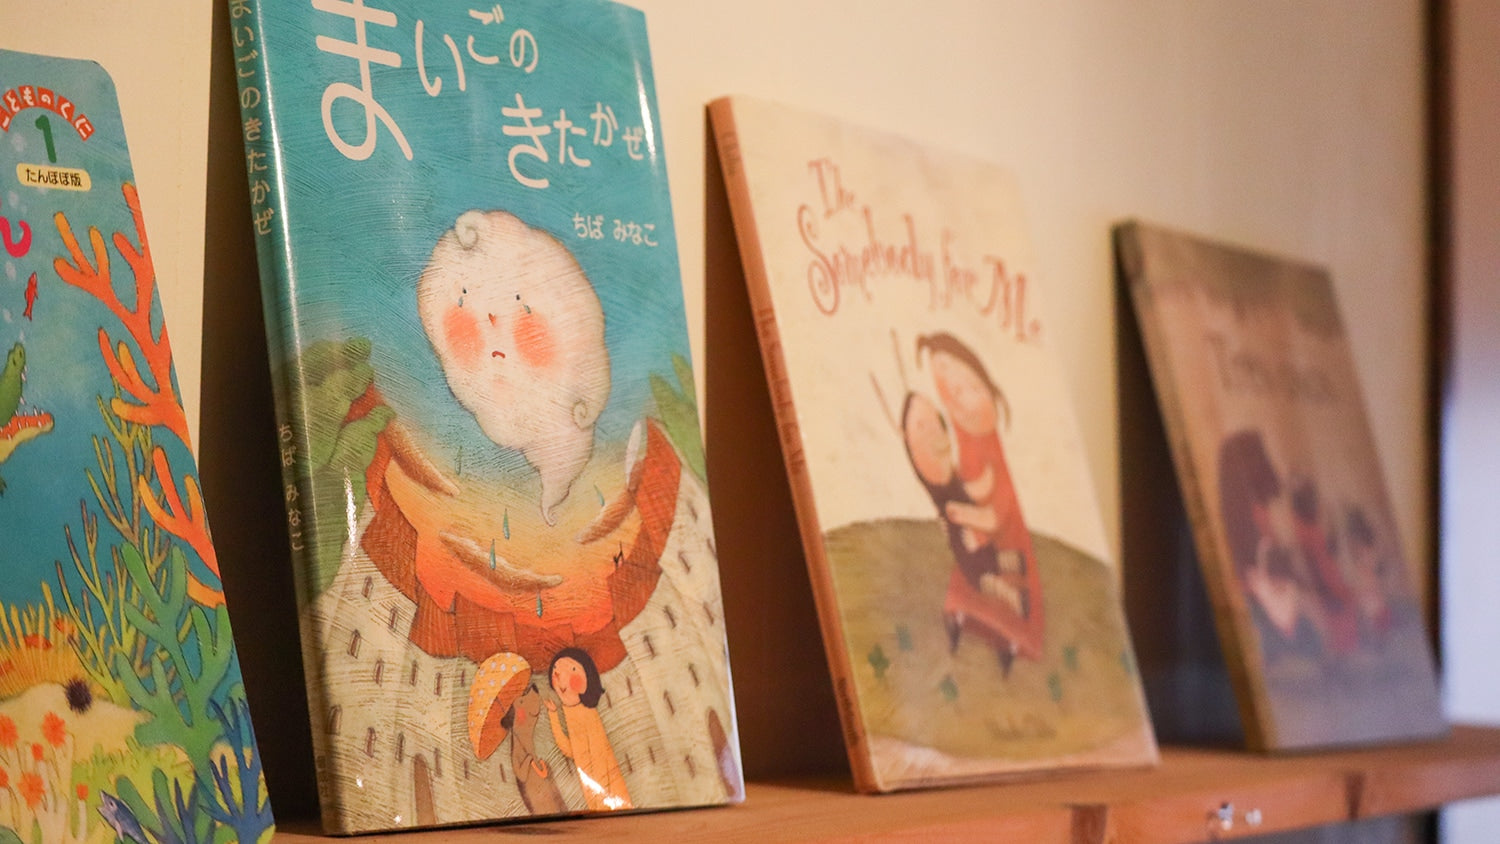 農楽蔵のラベルデザインを手掛ける佐々木佳津子さんの次姉夫妻は、絵本作家としてご活躍されている。